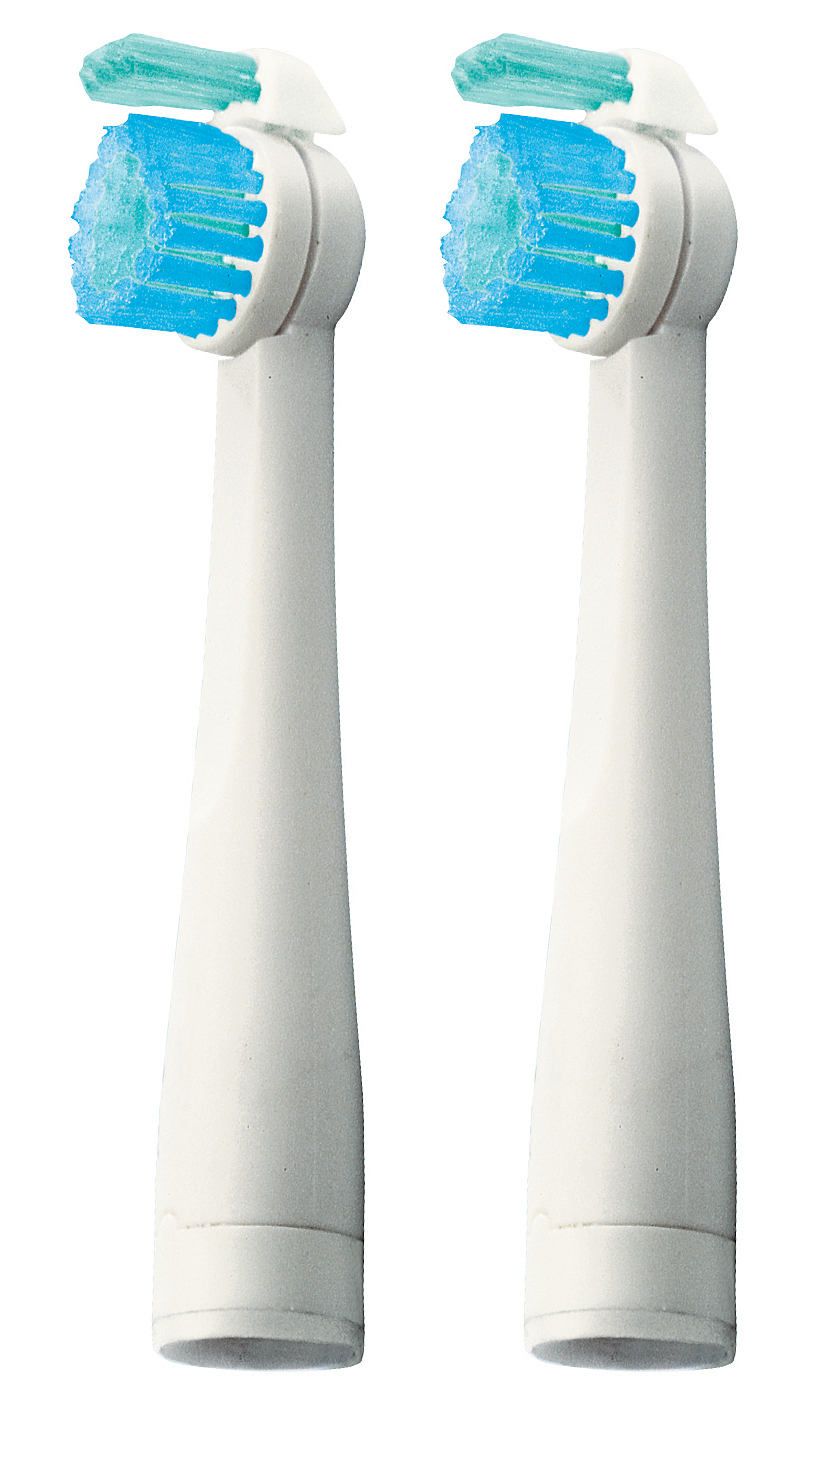 Купить насадку для электрической зубной щетки. Philips Sensiflex hx2012 насадки. Насадки для зубной щетки Philips Sensiflex. Насадки для щетки Philips Sensiflex. Электрическая зубная щётка Philips Sensiflex.